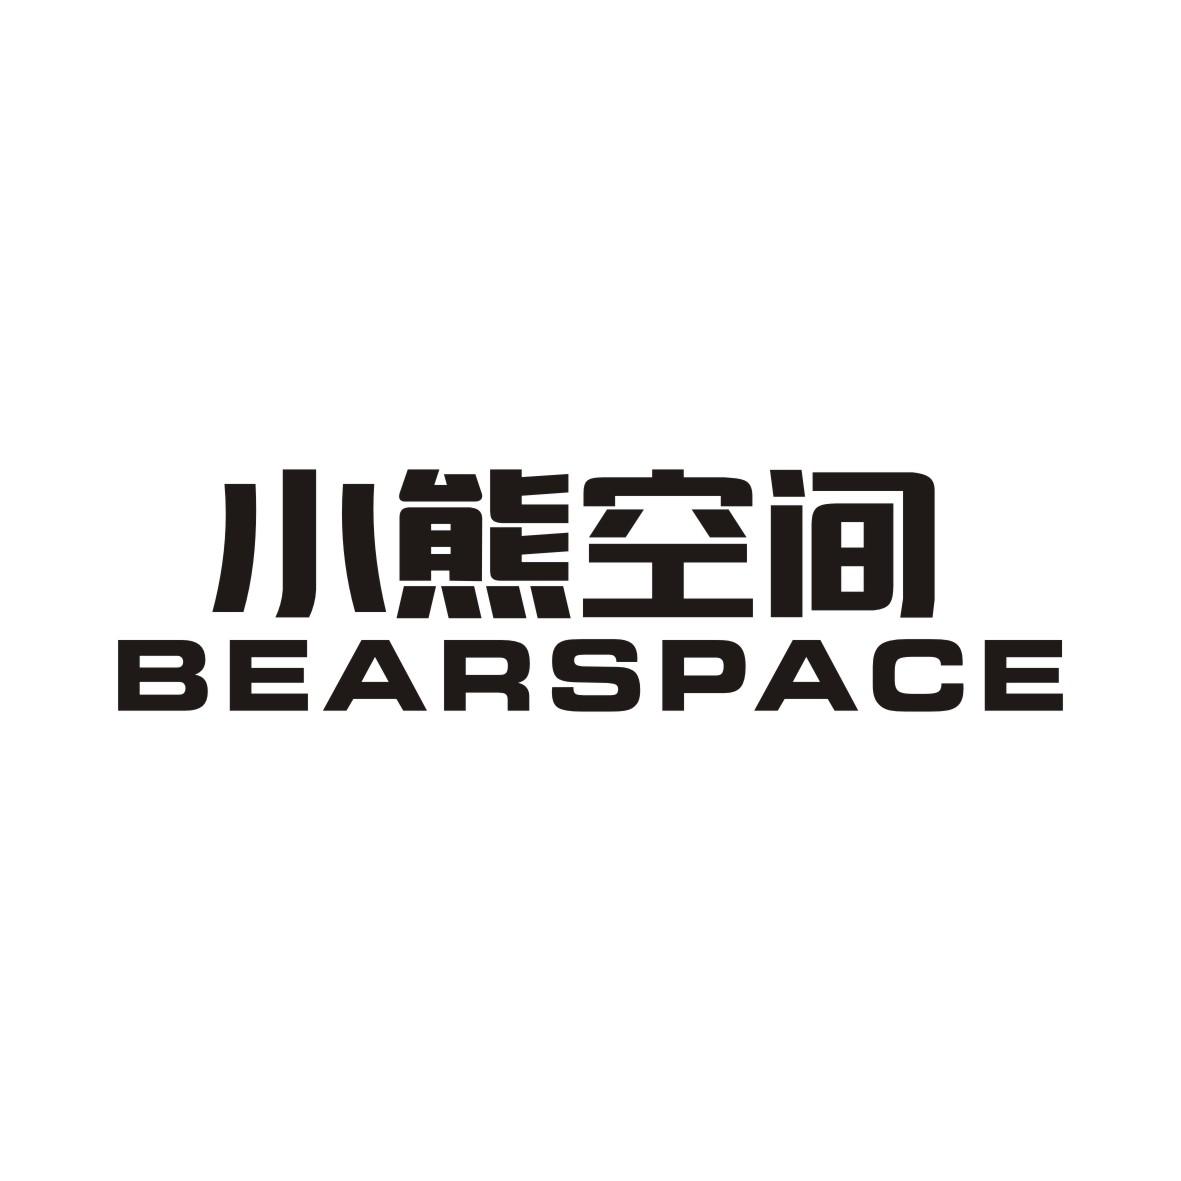 小熊空间 BEARSPACE